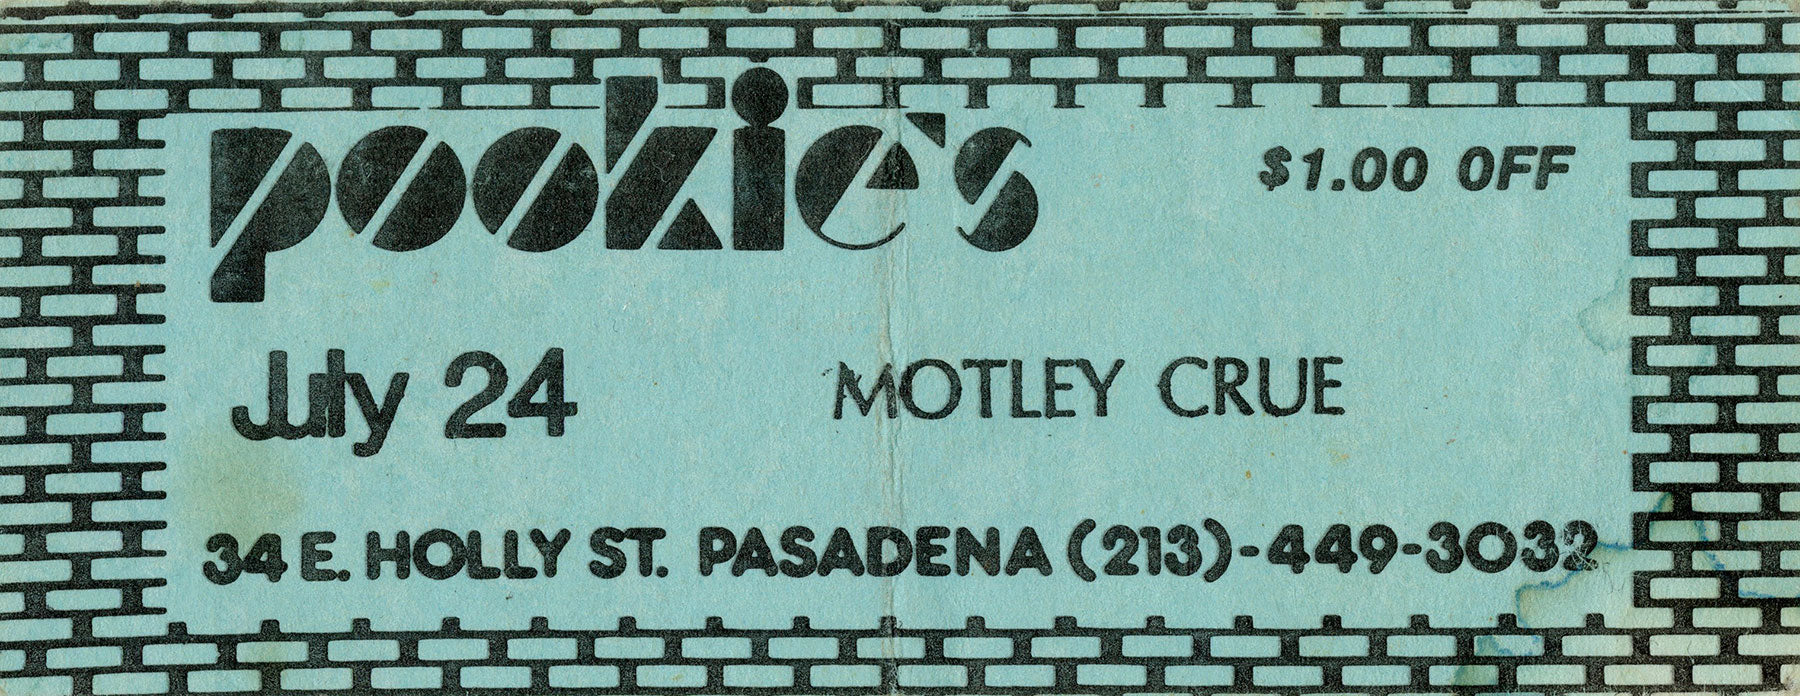 Coupon for a discount to 1981 Mötley Crüe shows circa 1981